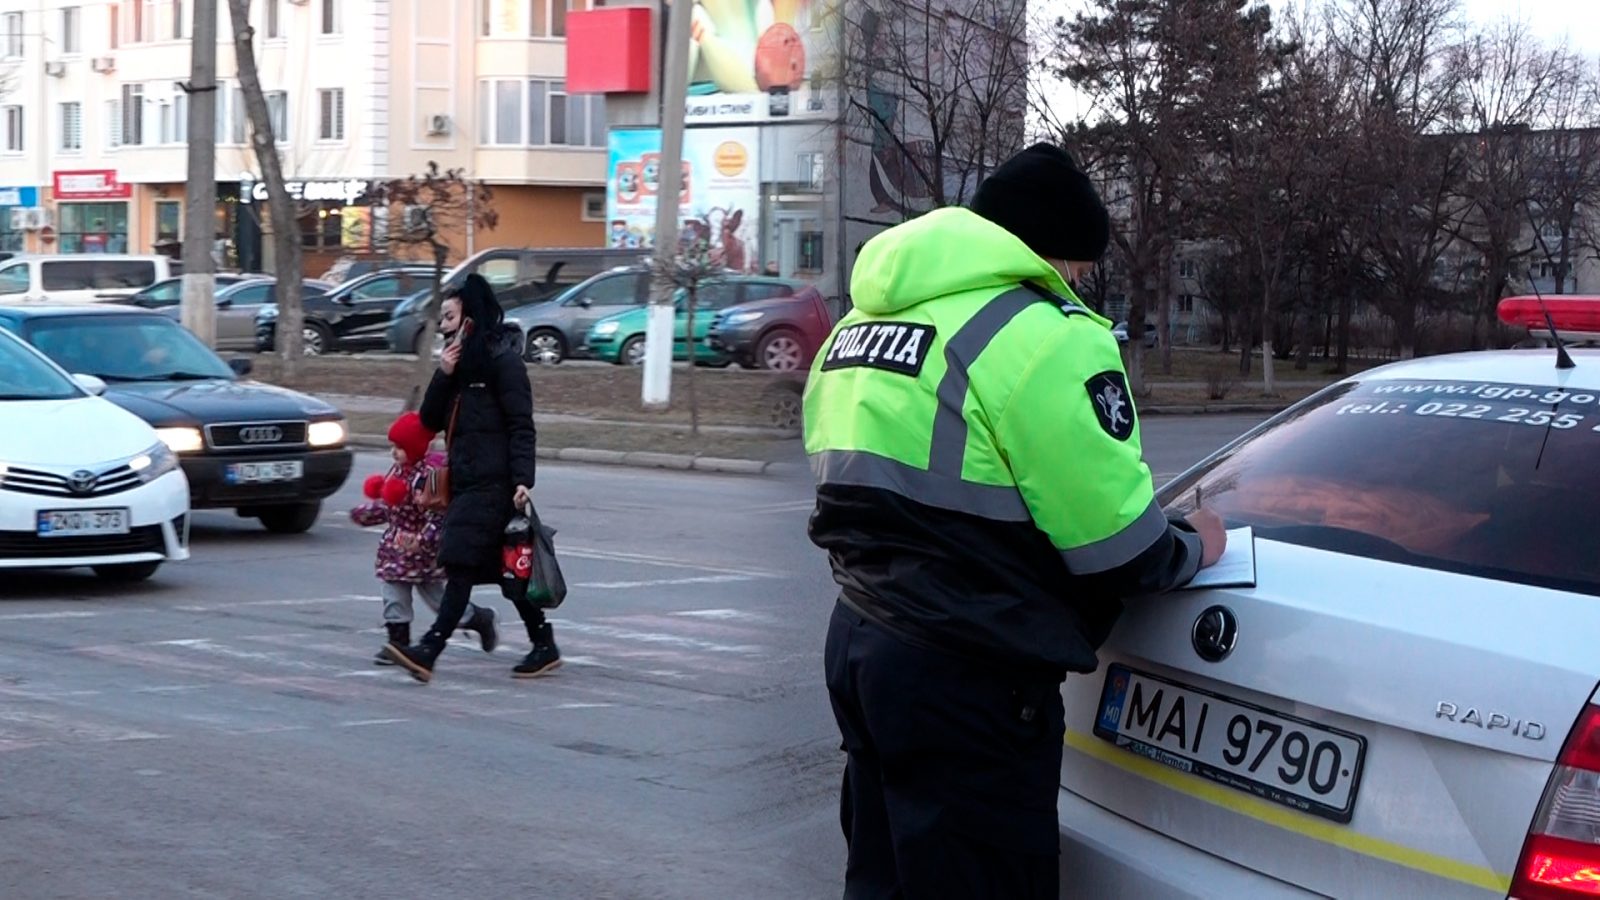 /VIDEO/ Șoferii din Bălți trași pe dreapta pentru nerespectarea regulilor de circulație. Inspectorii de patrulare au împărțit amenzi